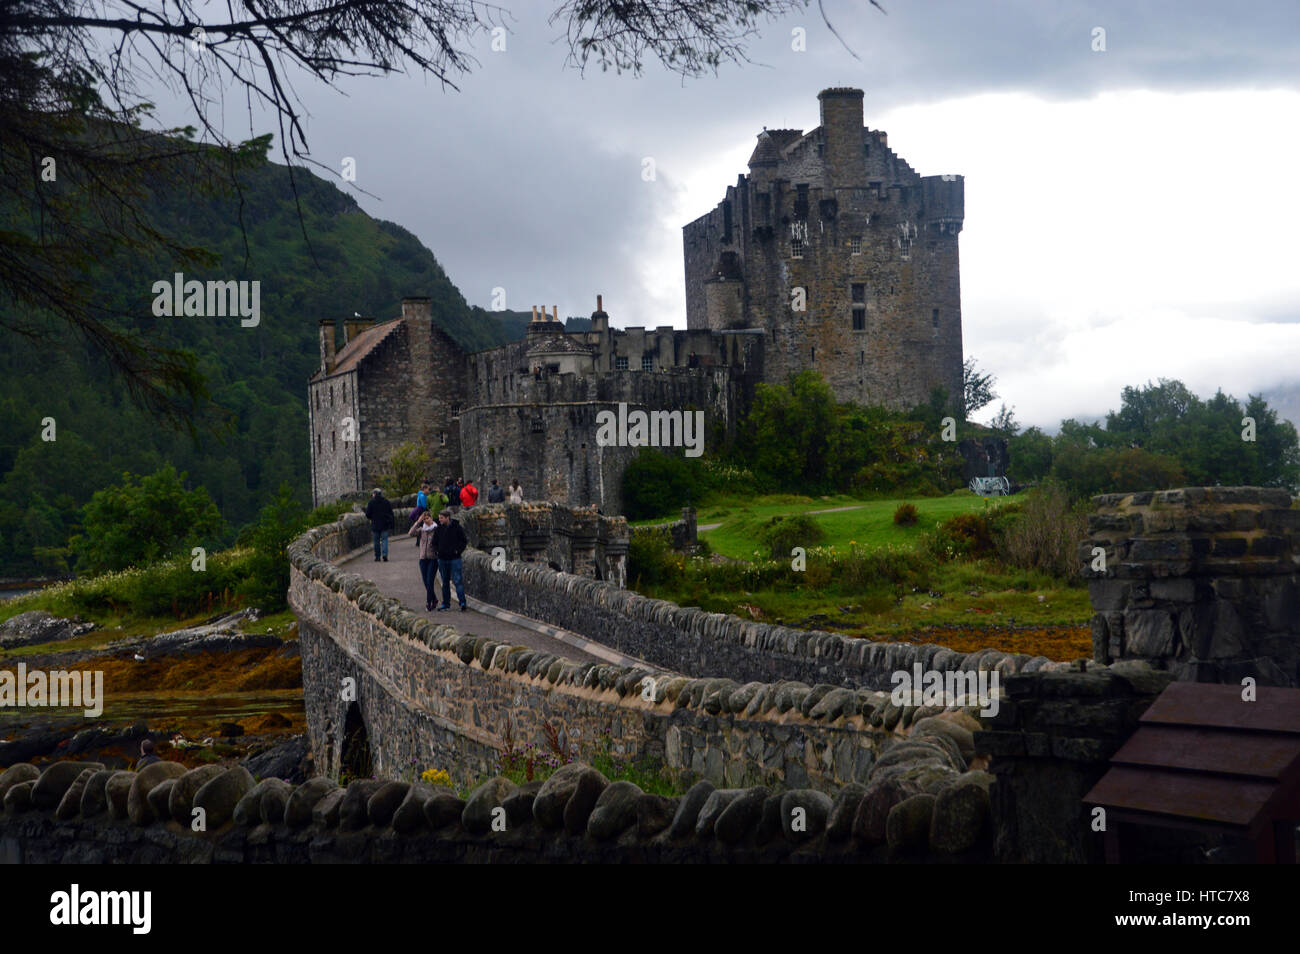 Les touristes marcher sur le pont pour le château d'Eilean Donan en route vers les îles dans les Highlands écossais. Banque D'Images